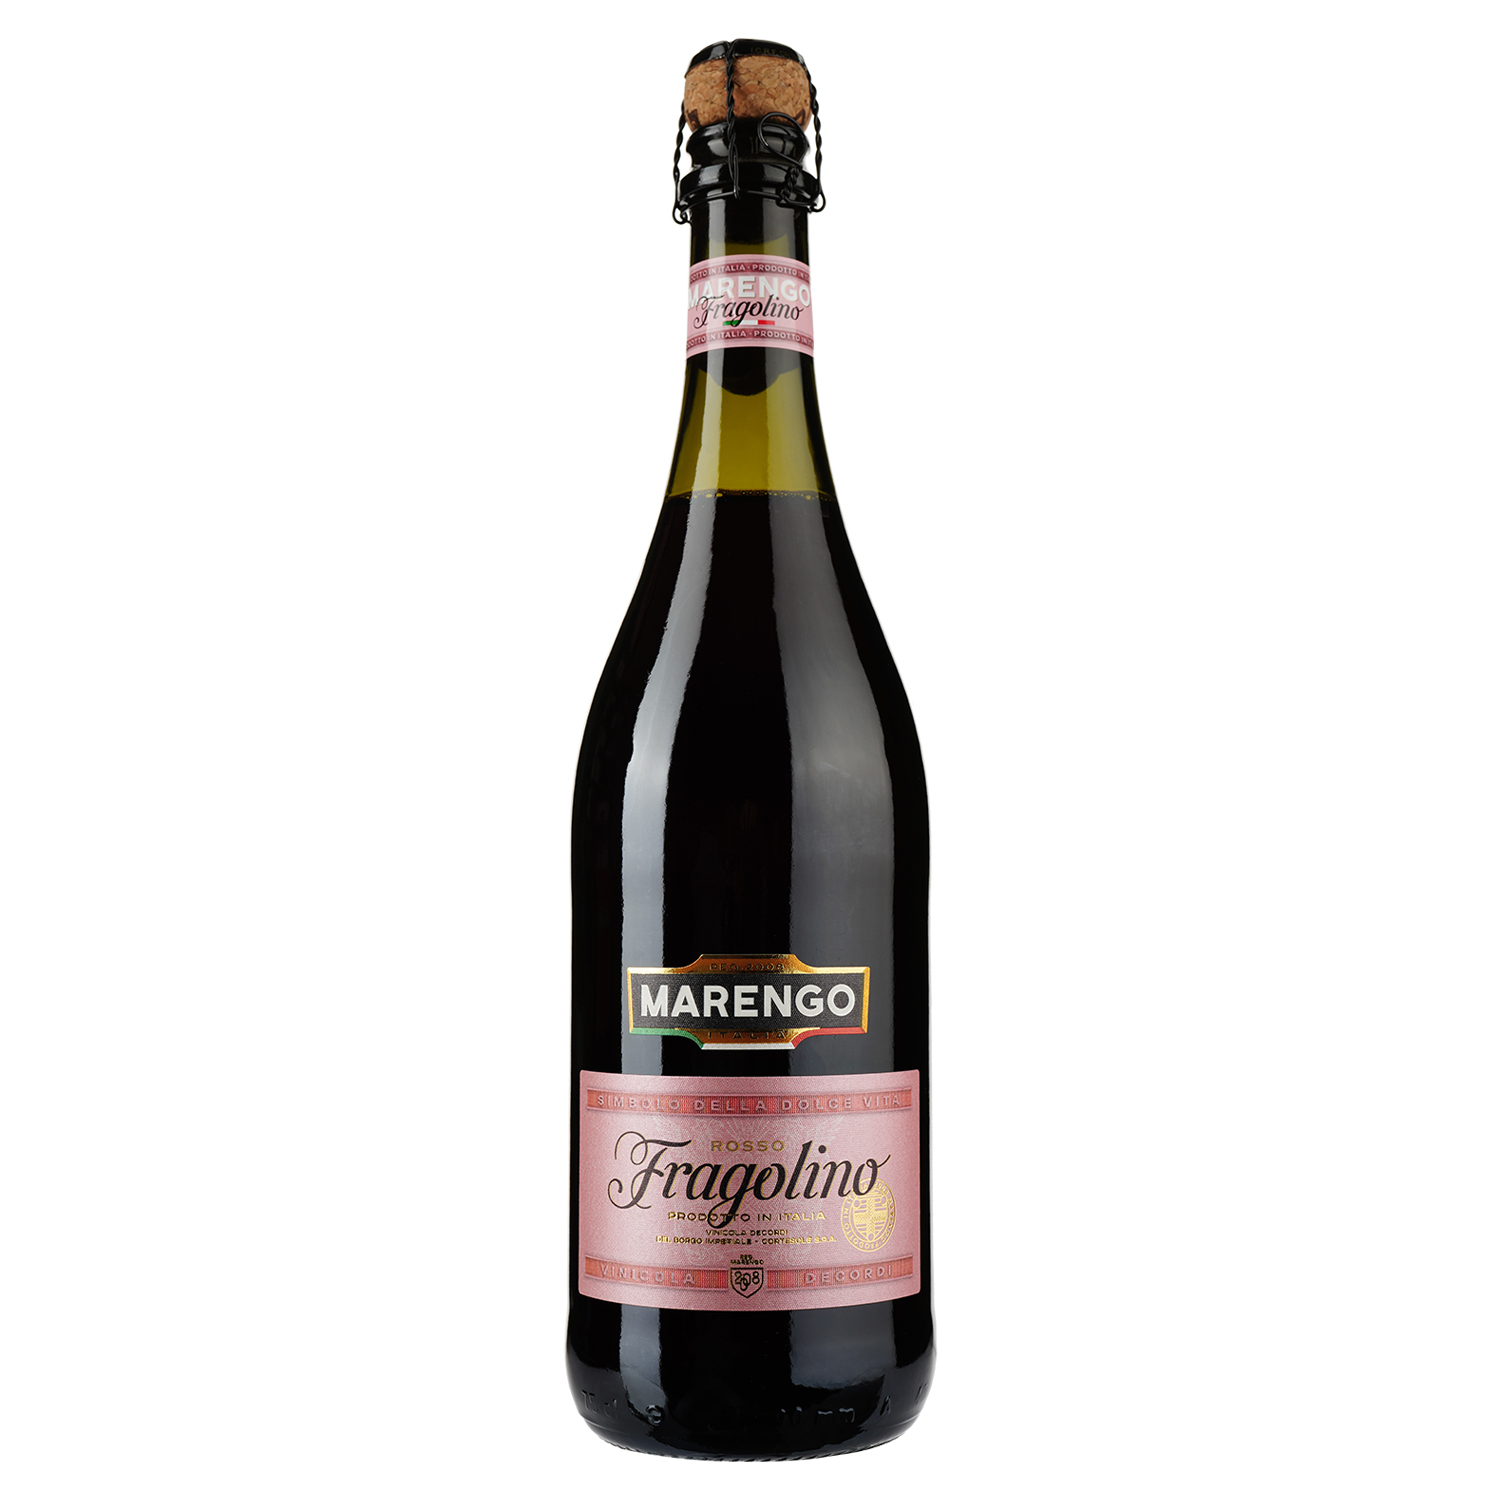 Напиток винный Marengo Fragolino, красный, сладкий, 7,5%, 0,75 л - фото 1